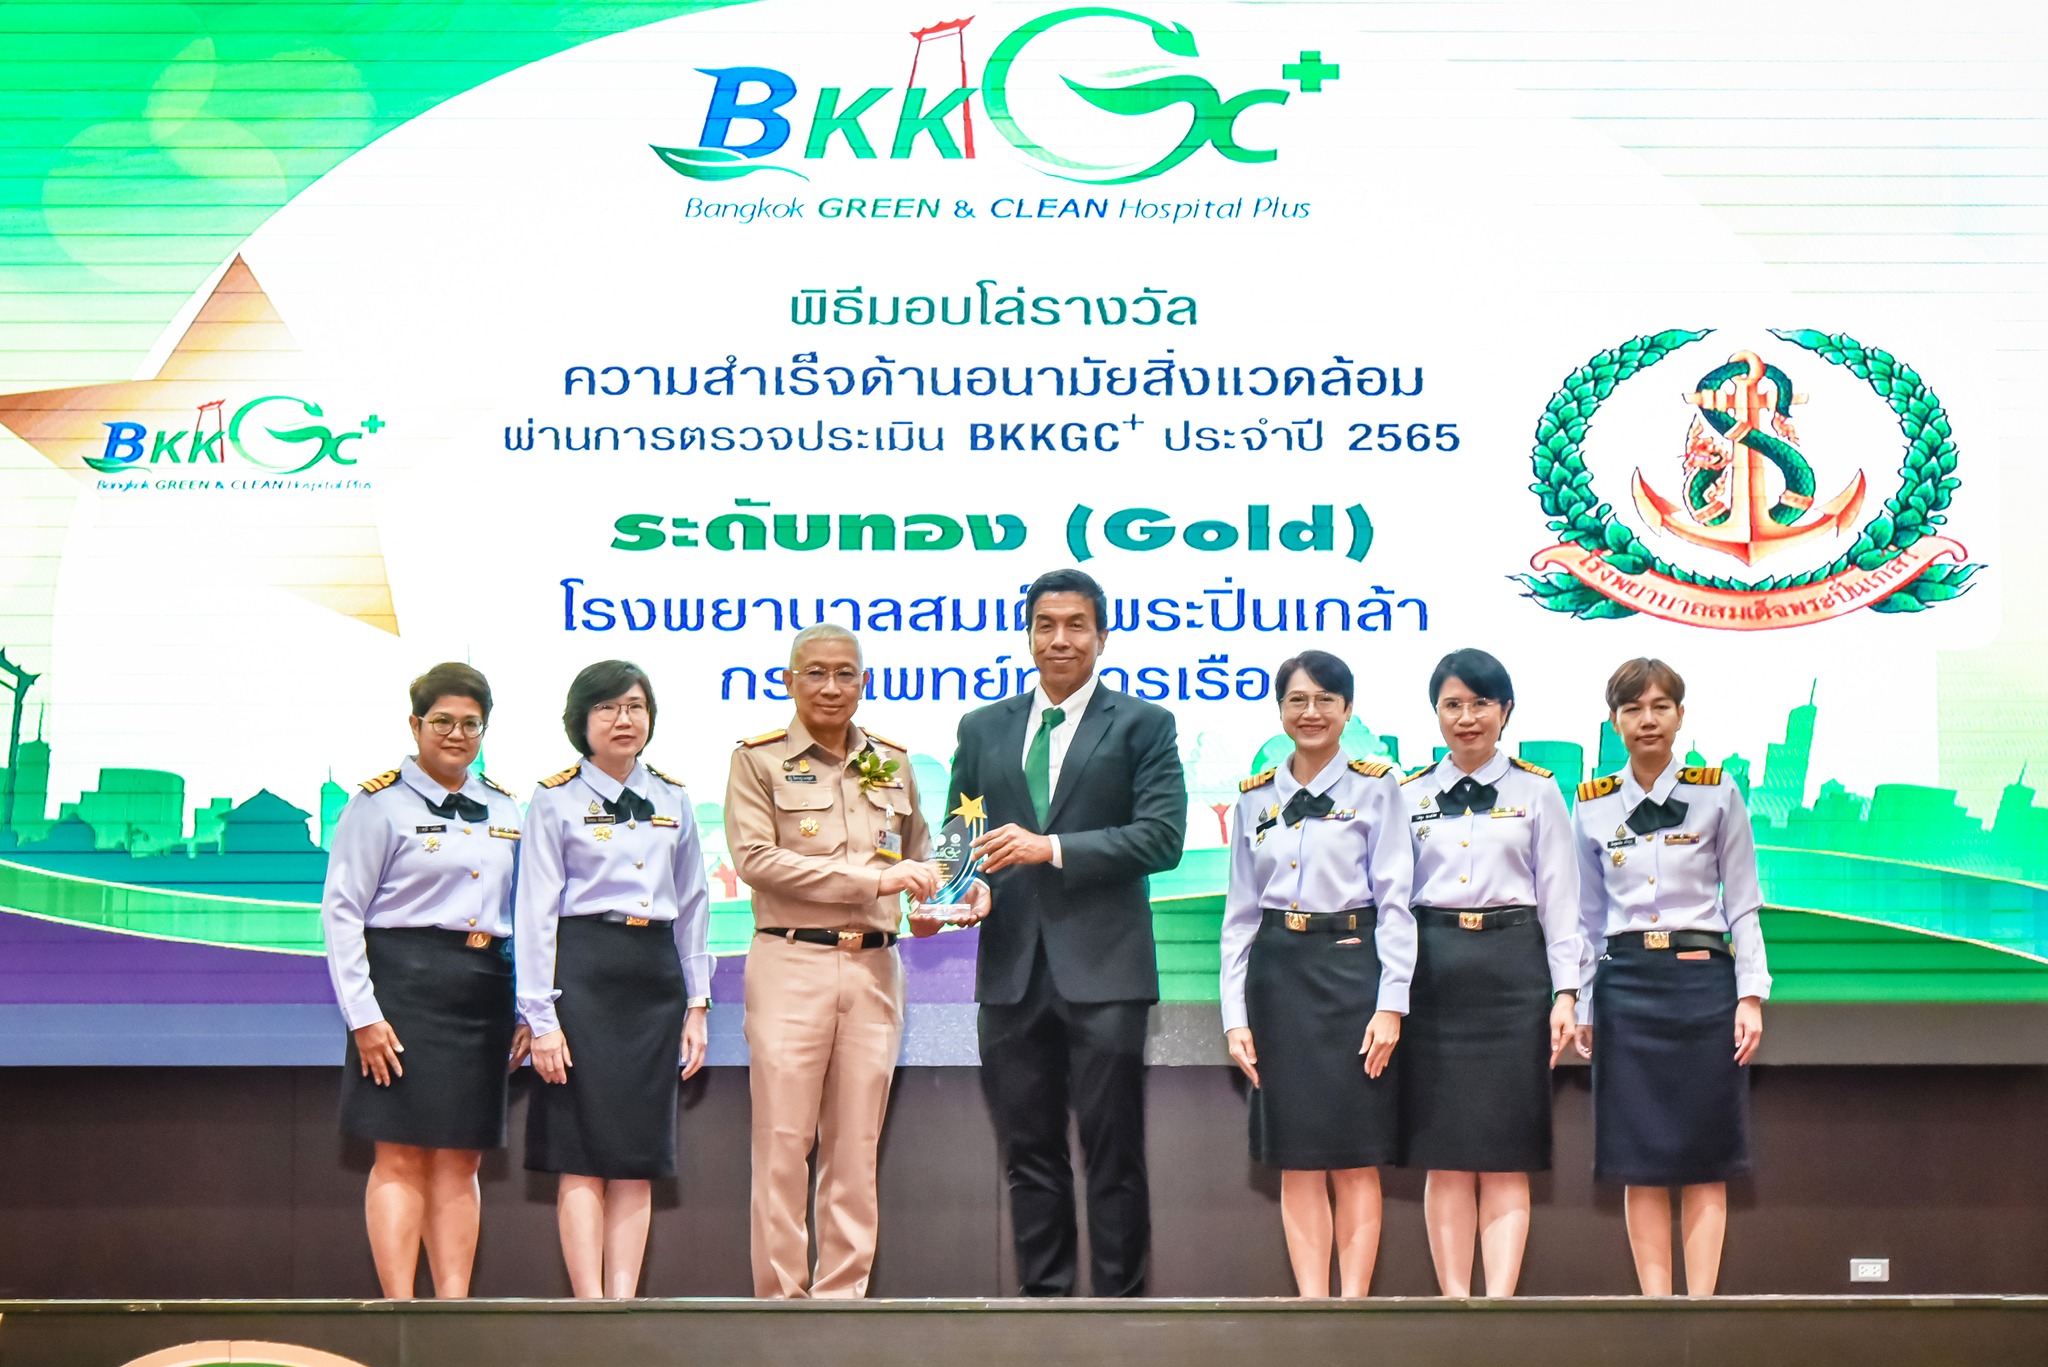 โรงพยาบาลสมเด็จพระปิ่นเกล้า กรมแพทย์ทหารเรือ รับมอบโล่รางวัลการดำเนินการด้านอนามัยสิ่งแวดล้อมในสถานพยาบาล Bangkok GREEN & CLEAN Hospital Plus (BKKGC+) ประจำปี 2565